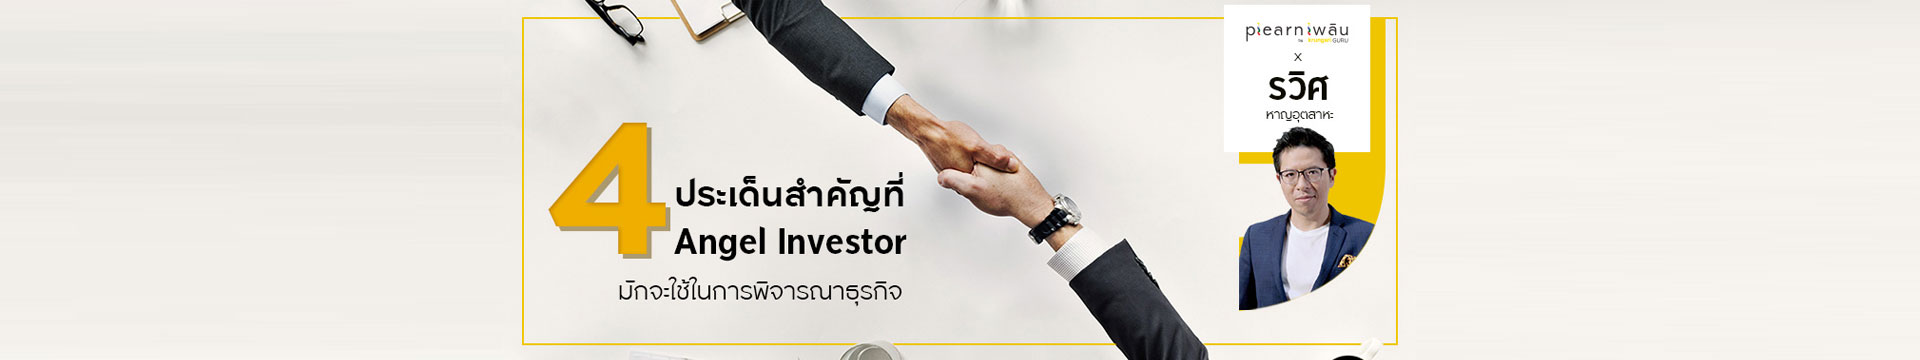 4 ประเด็นสำคัญที่ Angel Investor มักจะใช้ในการพิจารณาธุรกิจ